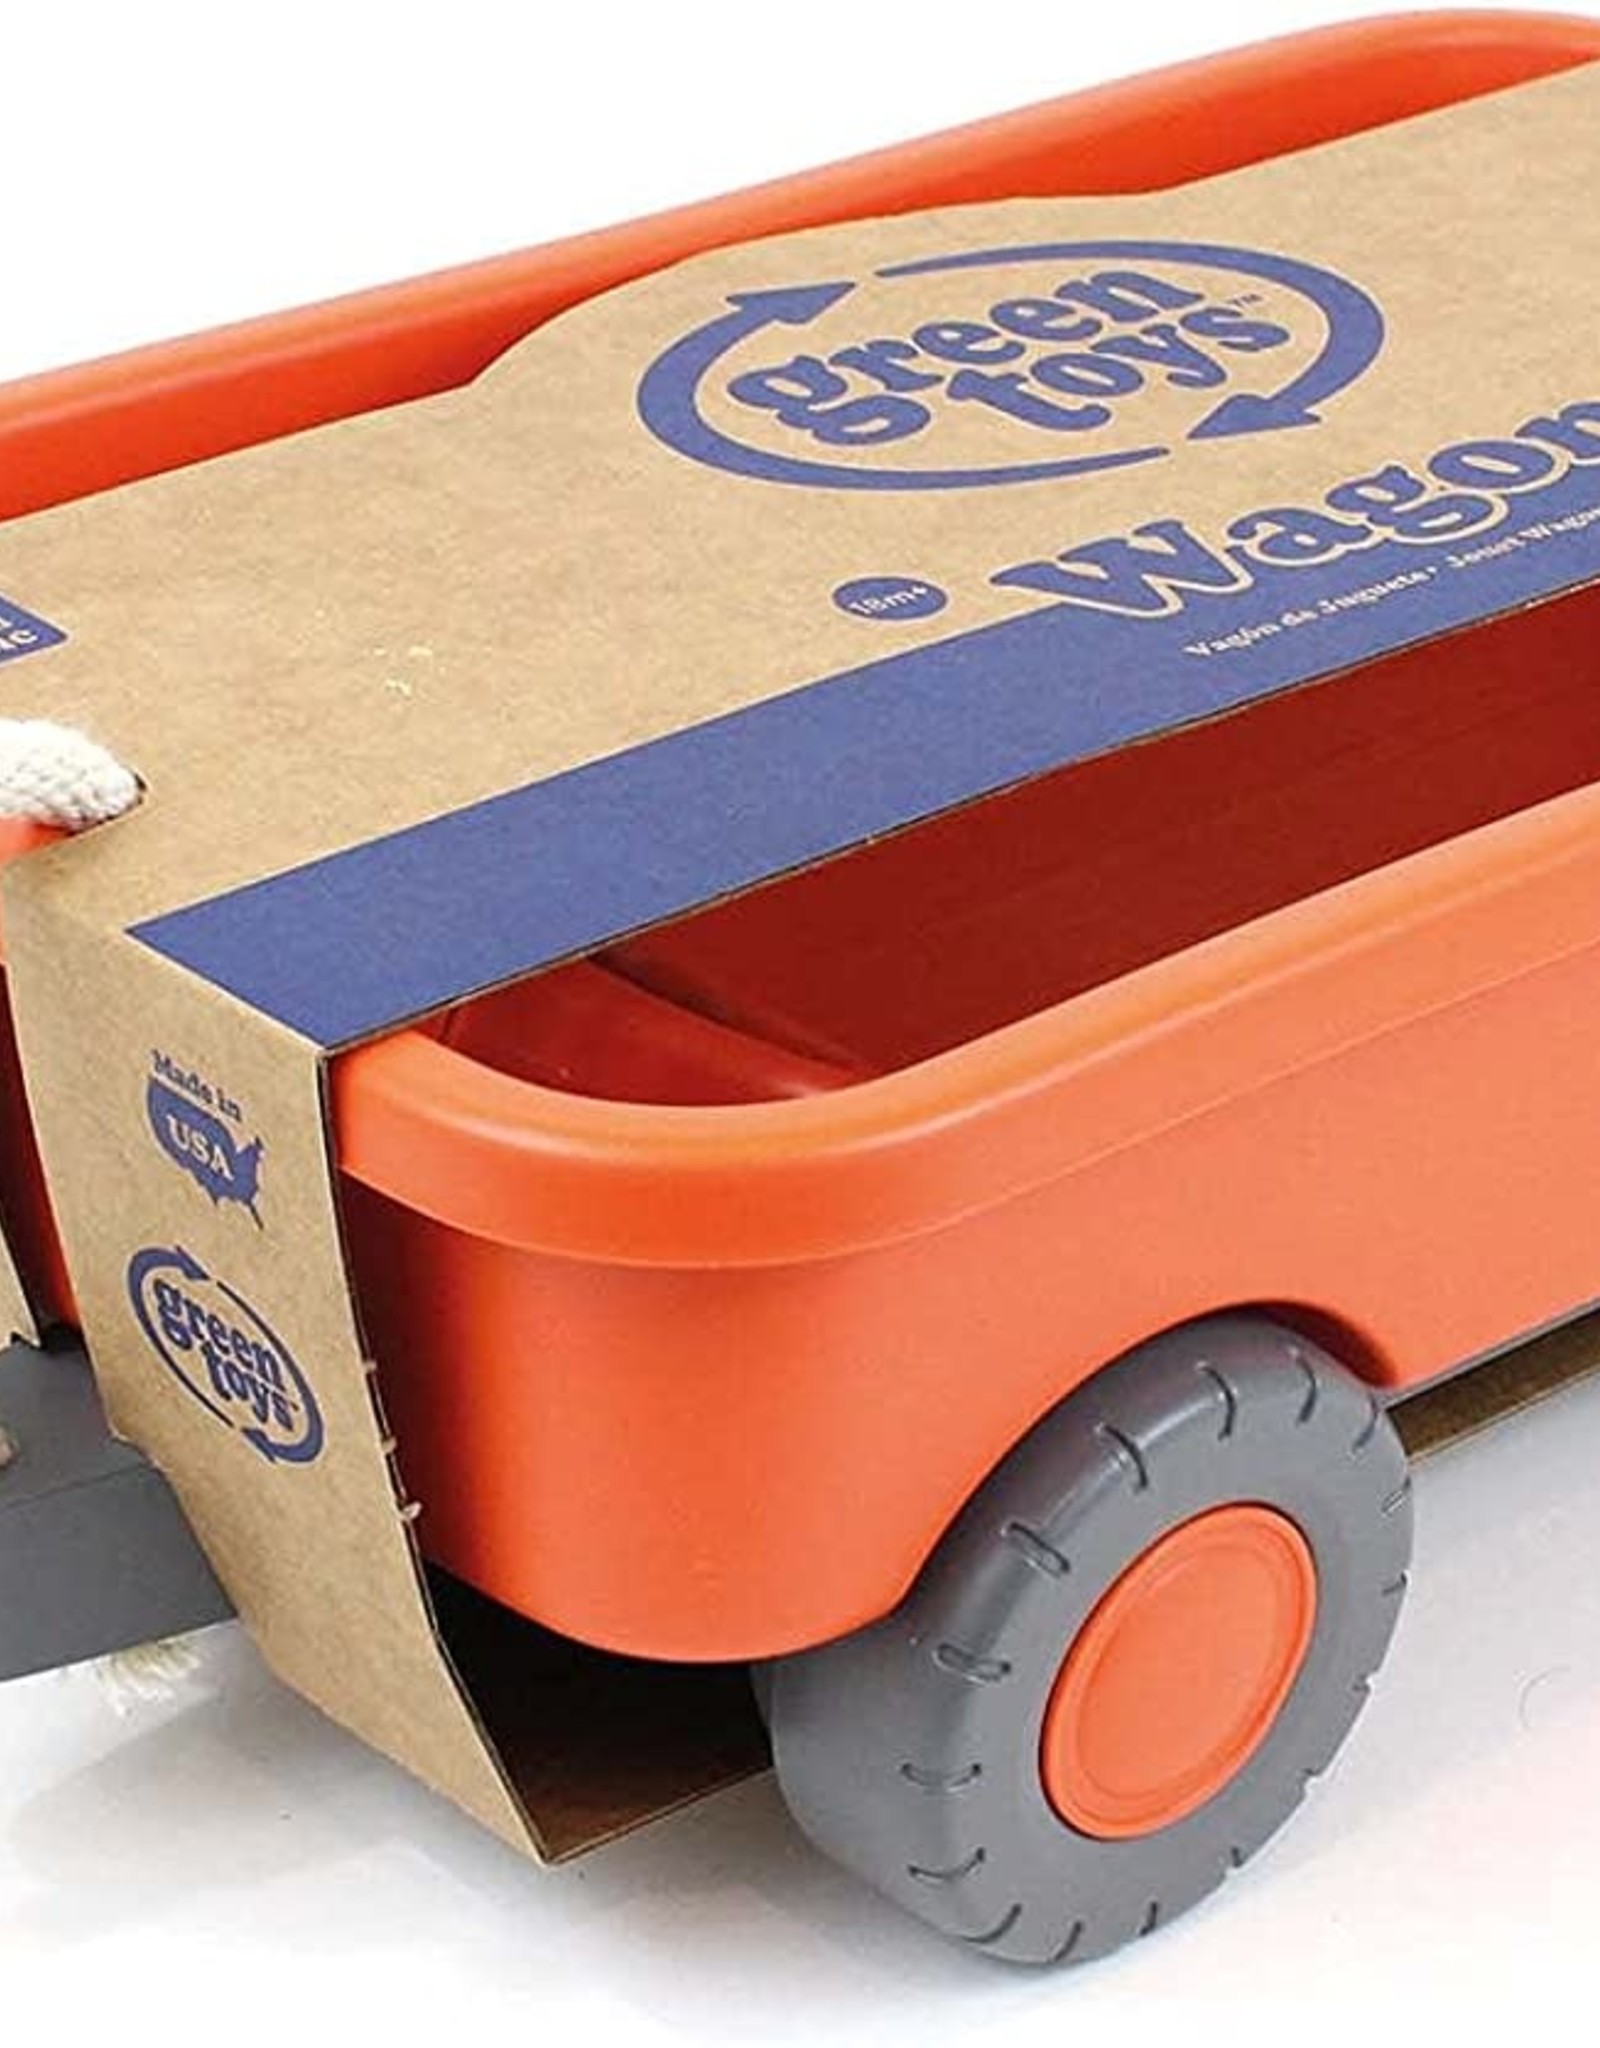 Green Toys Wagon - Orange